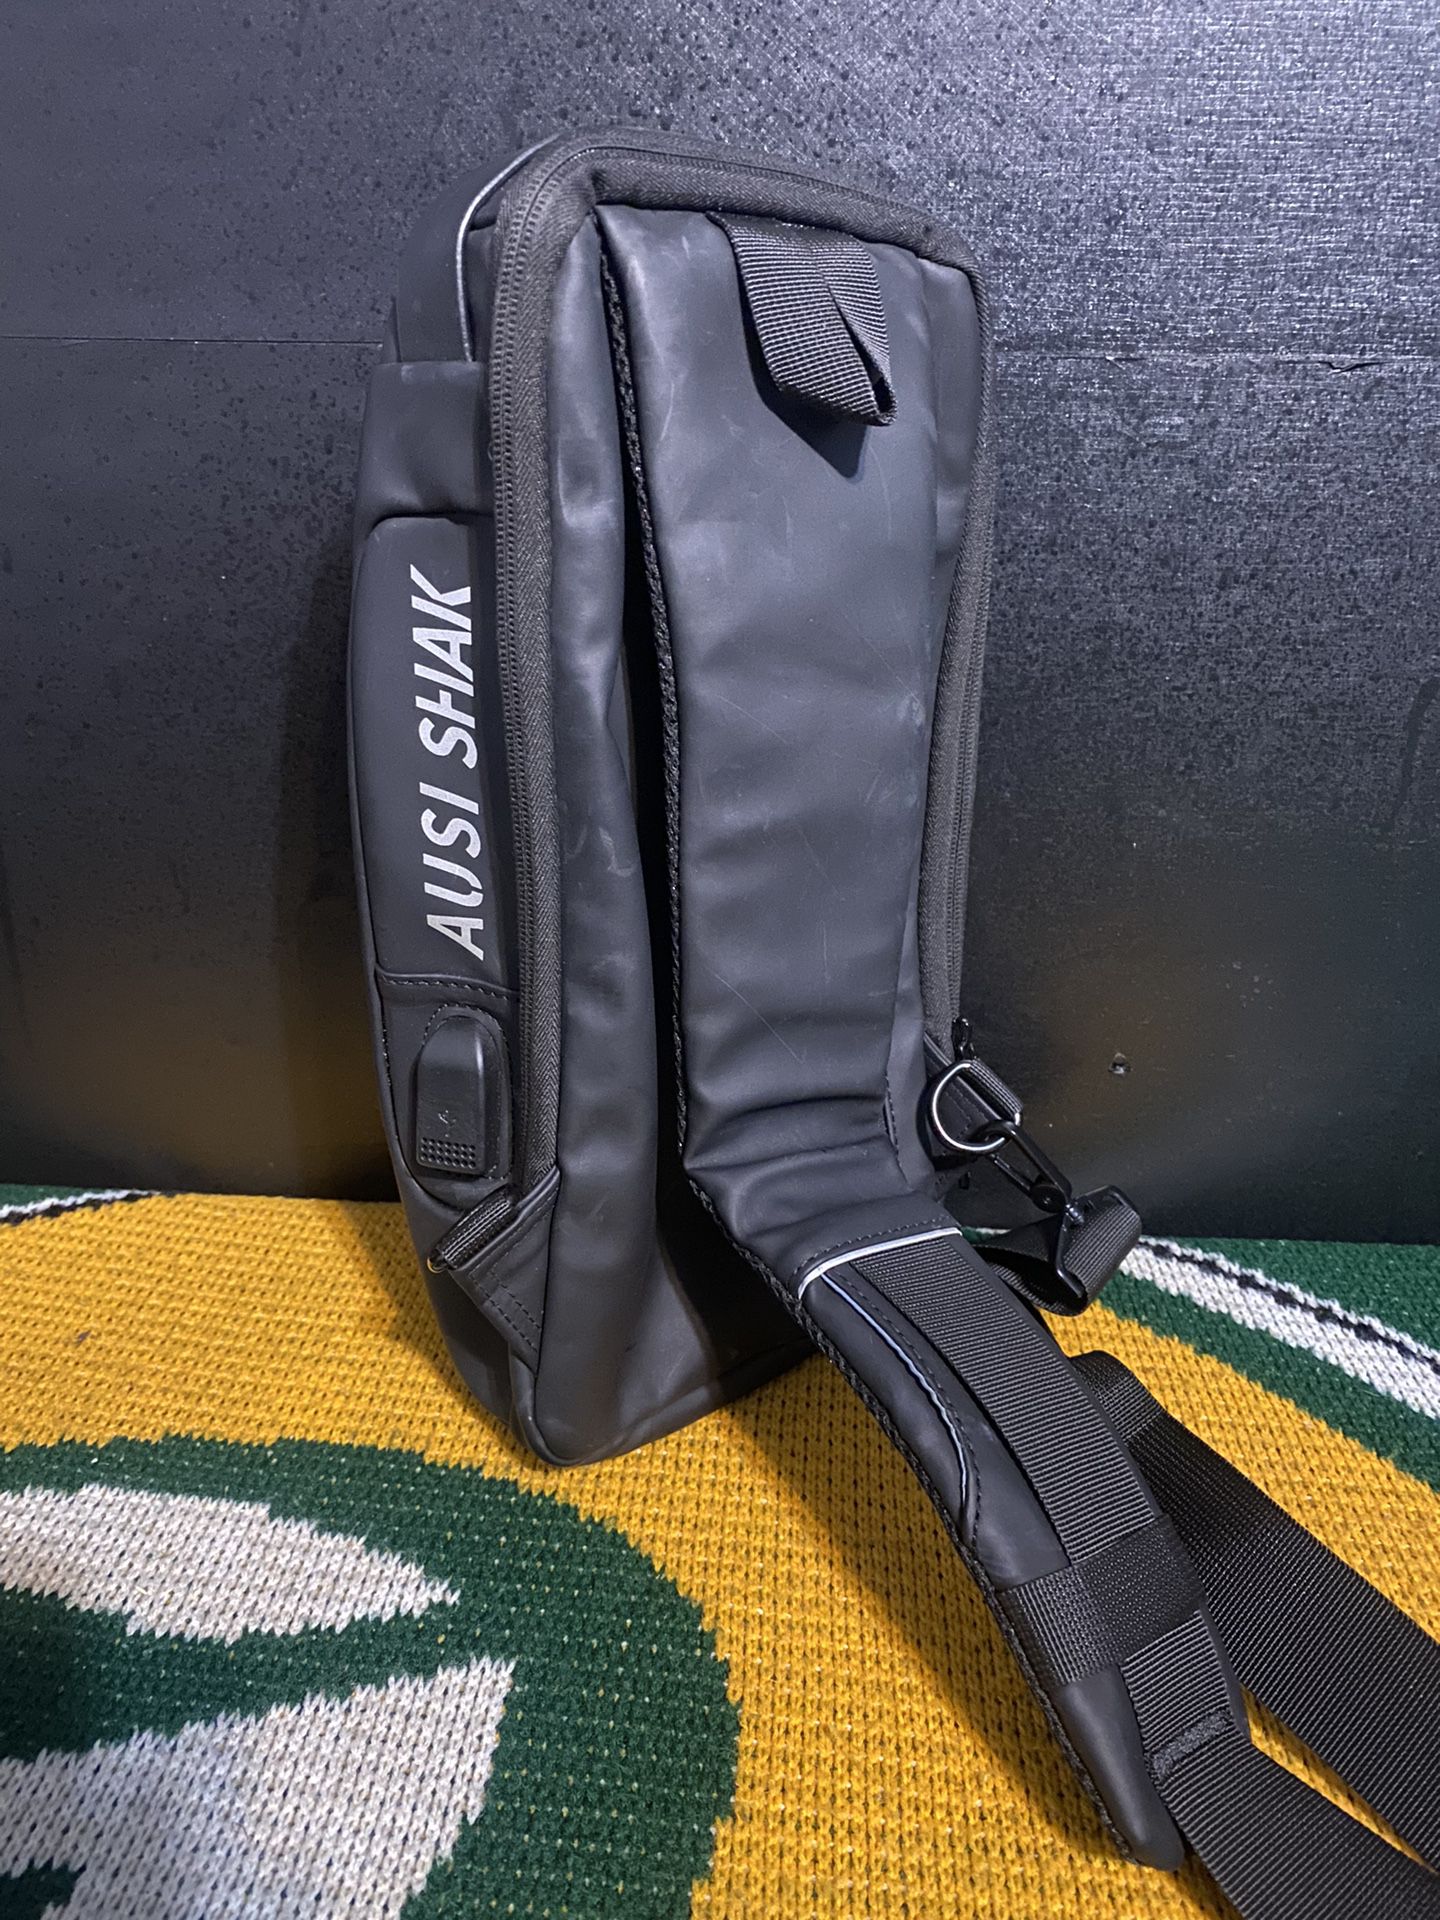 Sling Sport Shoulder Bag. Stylish shoulder sling bag.